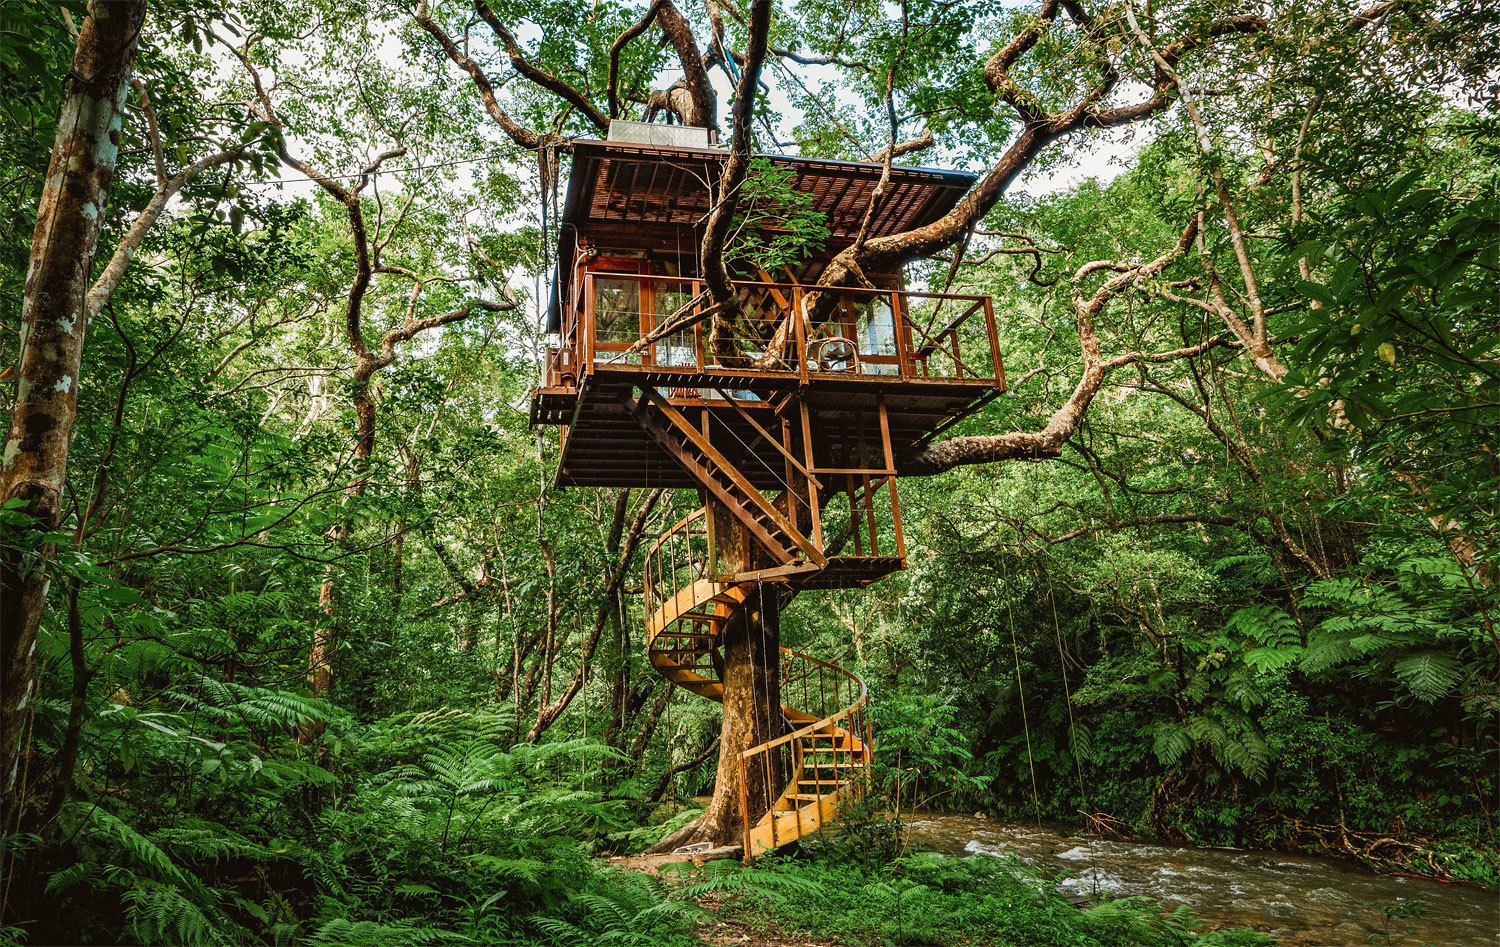 Nhà trên cây: Một ngôi nhà trên cây độc đáo từ thiên nhiên, tại đó bạn có thể trải nghiệm cuộc sống giữa thiên nhiên xanh tươi. Tận hưởng không khí mát mẻ, hít thở bầu không khí trong lành và thư giãn sau những giờ làm việc căng thẳng.